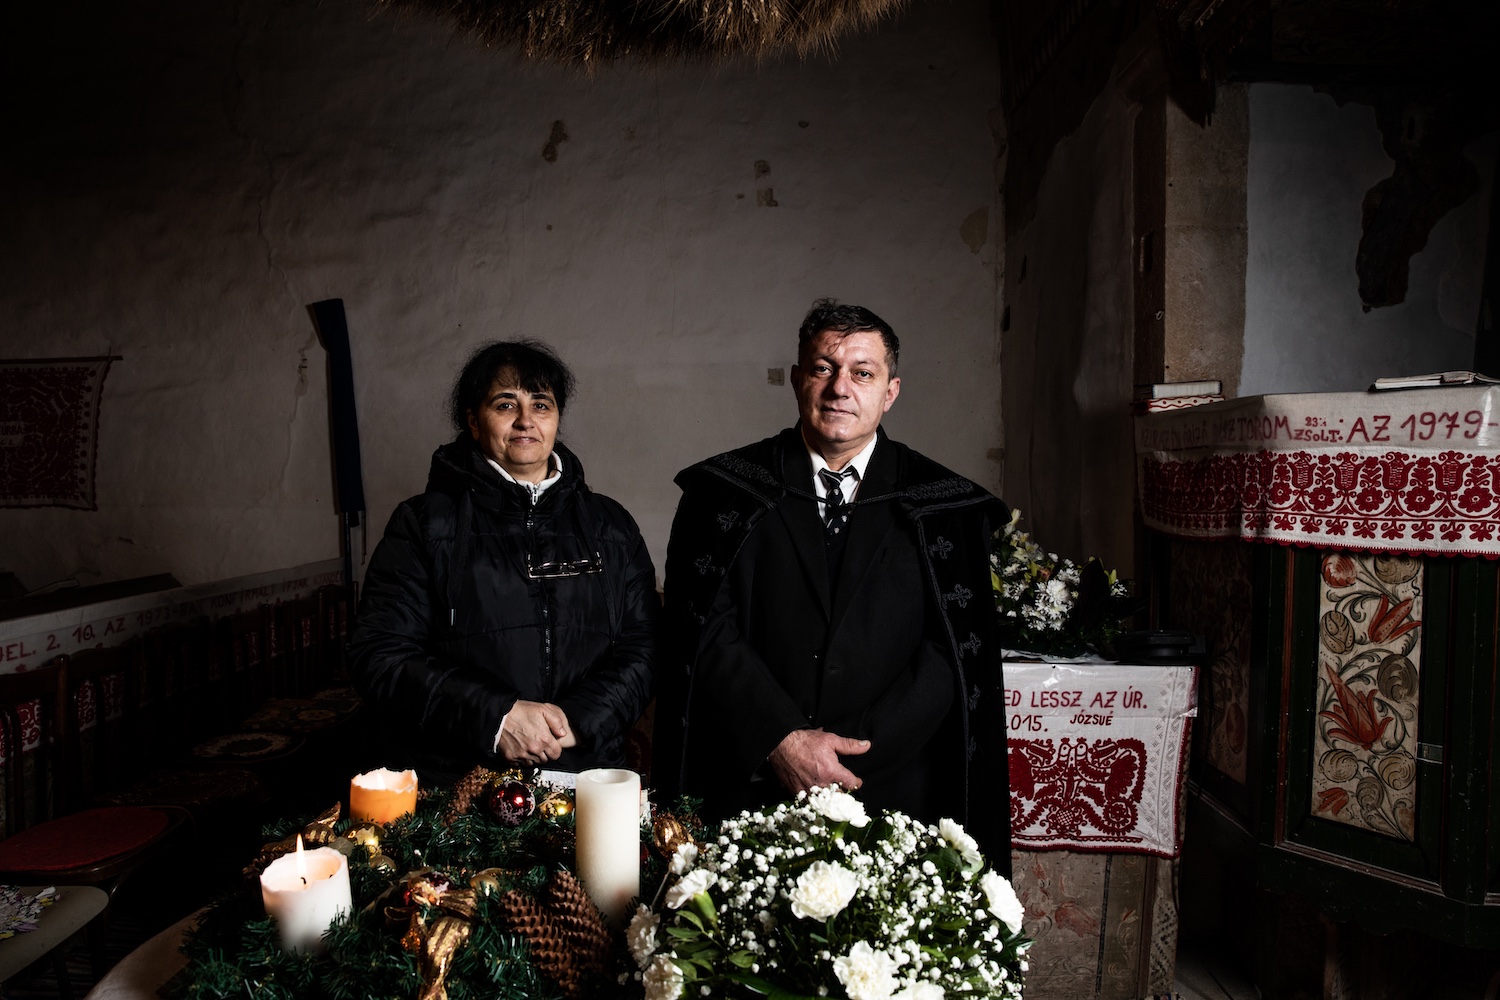 Felházi Zoltán és felesége, Klára l Fotó: Válasz Online/Vörös Szabolcs